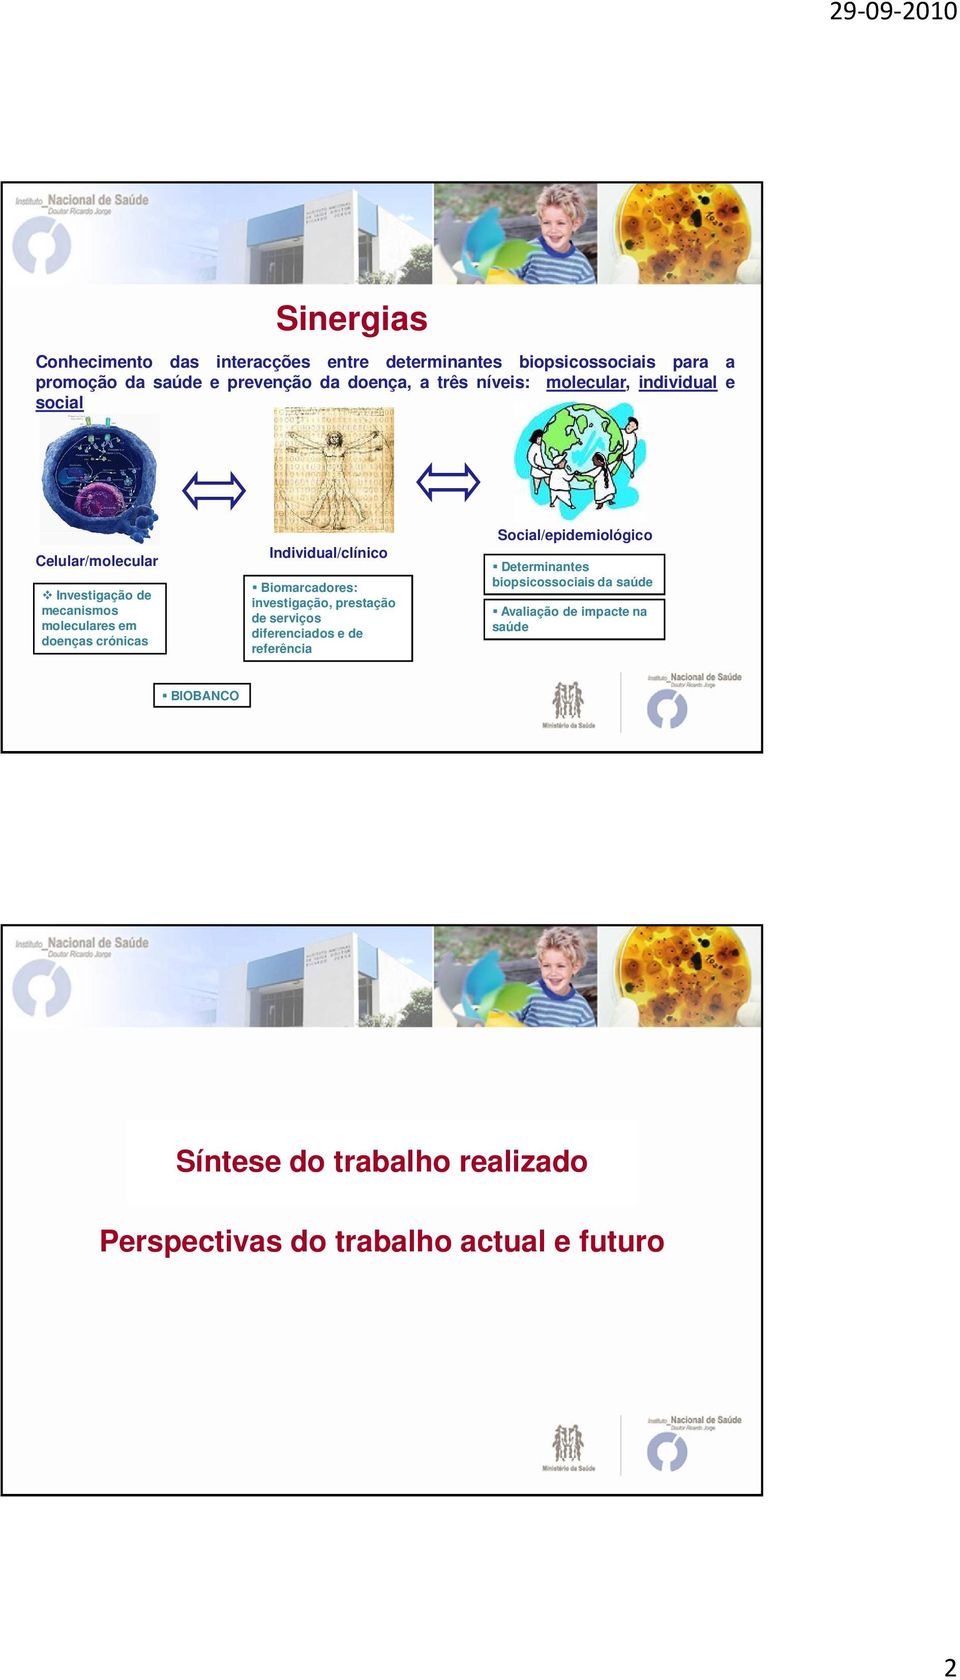 Individual/clínico Biomarcadores: investigação, prestação de serviços diferenciados e de referência Social/epidemiológico